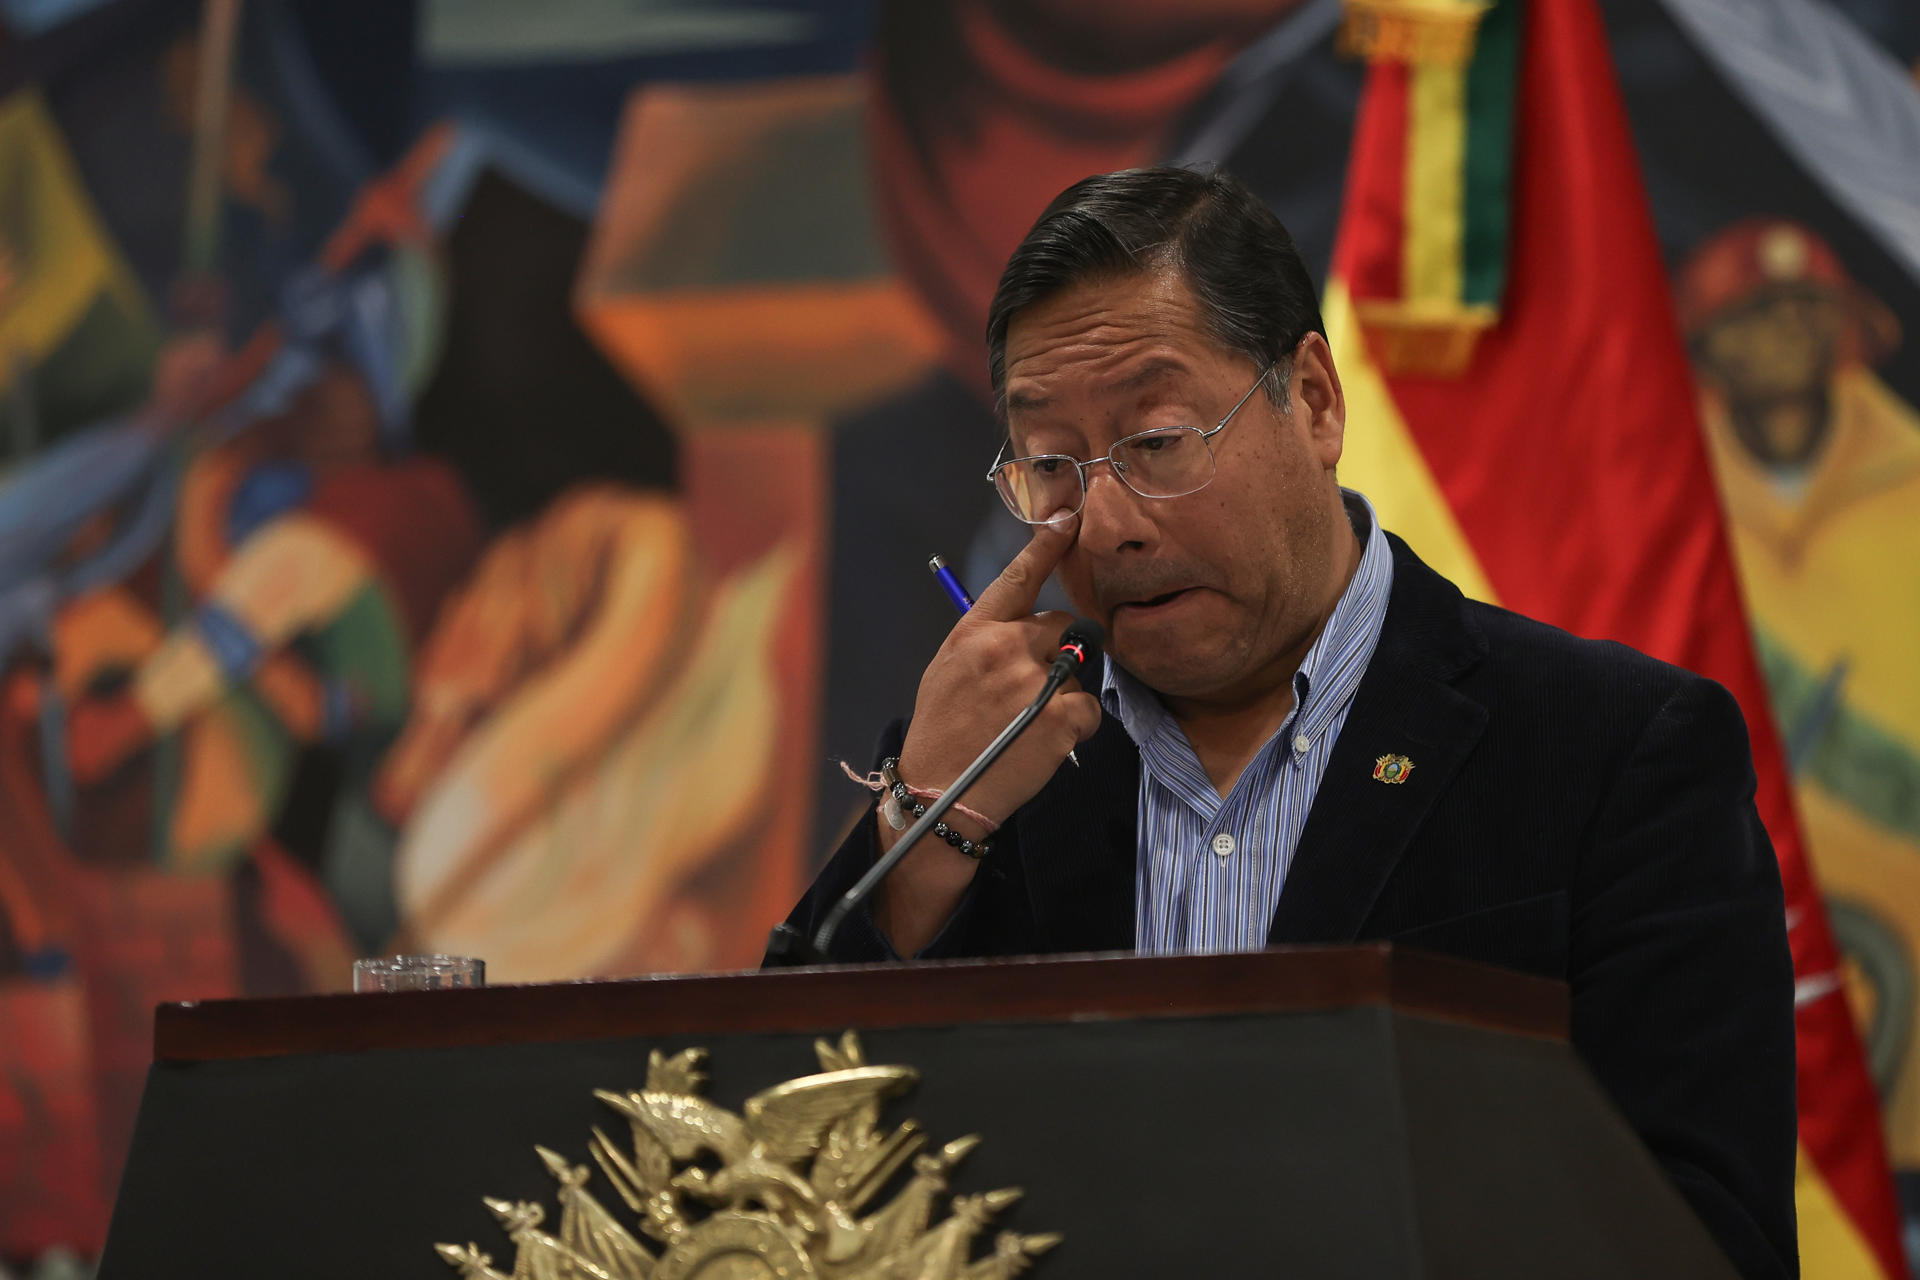 El presidente de Bolivia, Luis Arce, participa durante una conferencia de prensa, tras el fallido golpe de Estado, este jueves, en La Paz (Bolivia). EFE/ Luis Gandarillas